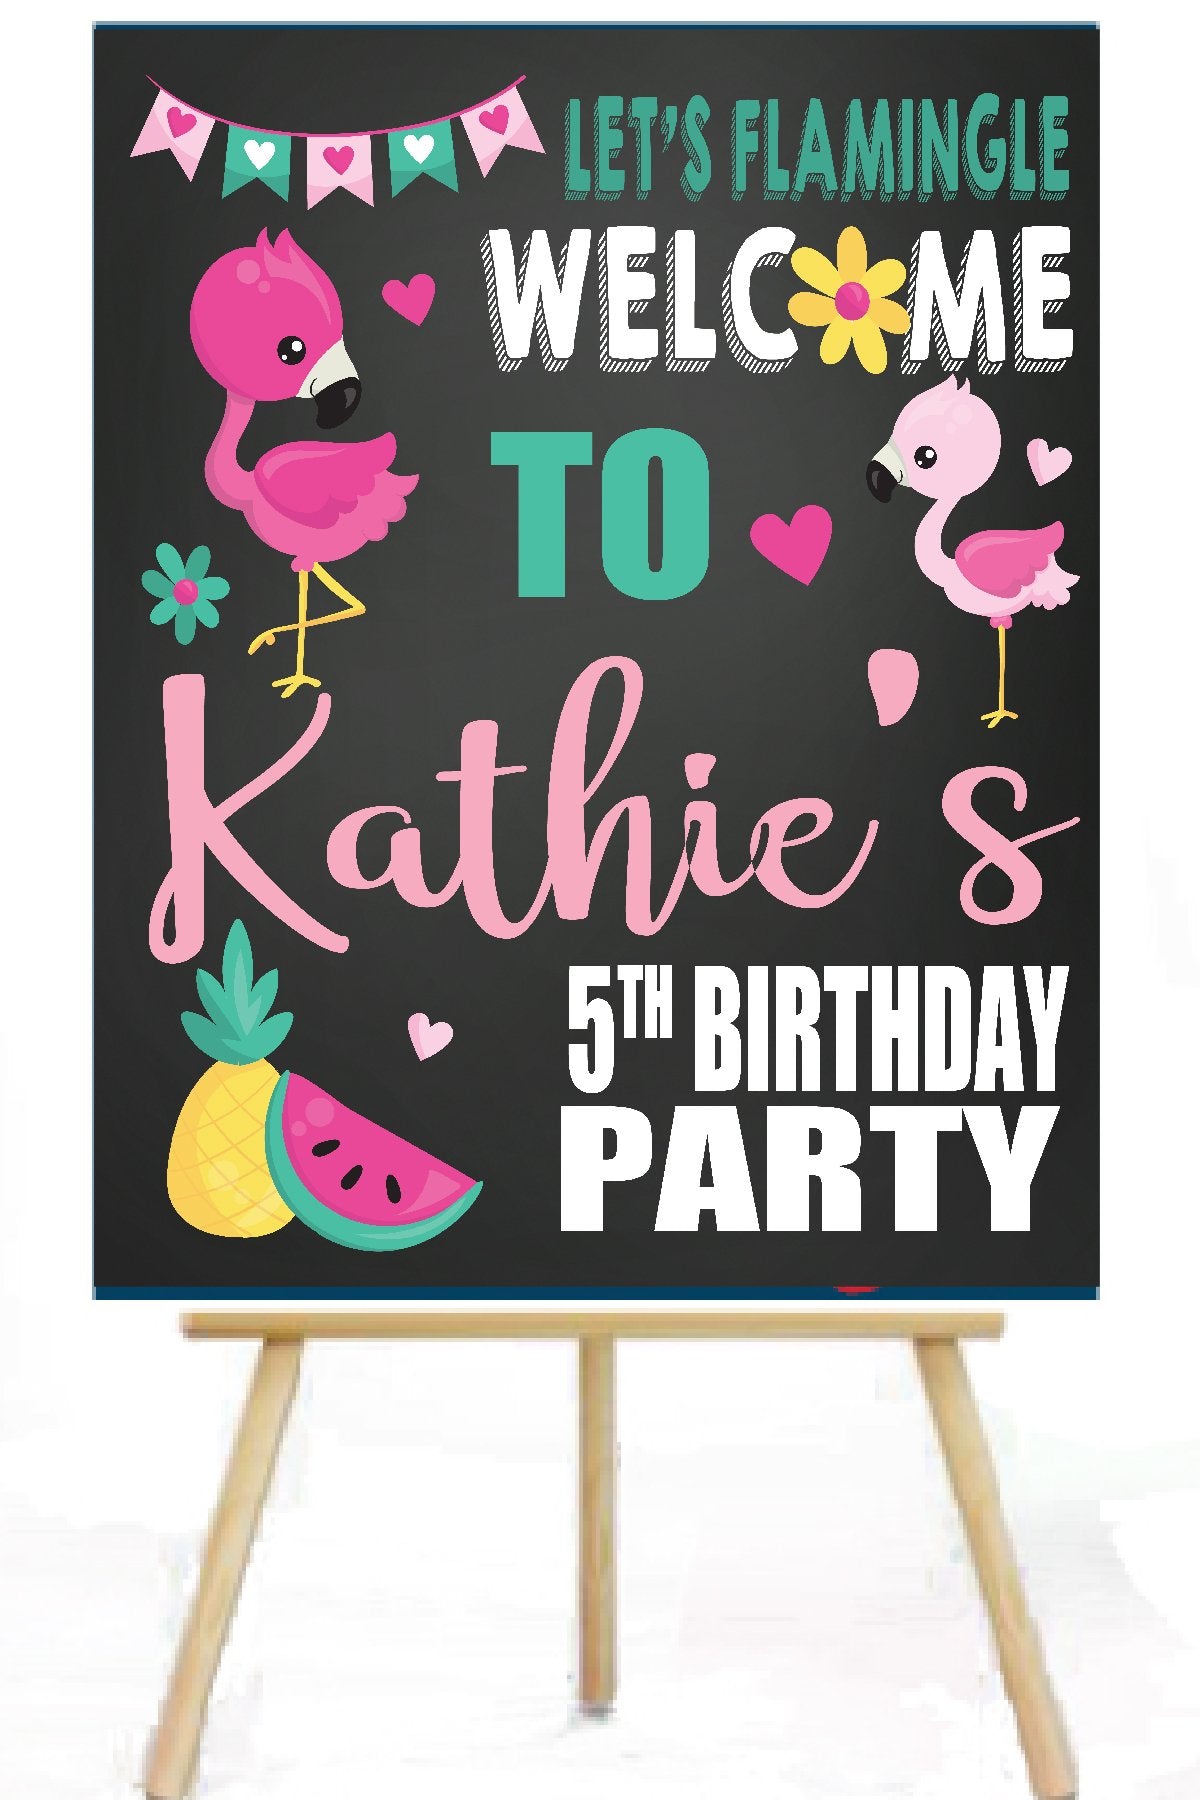 Flamingo birthday party signage